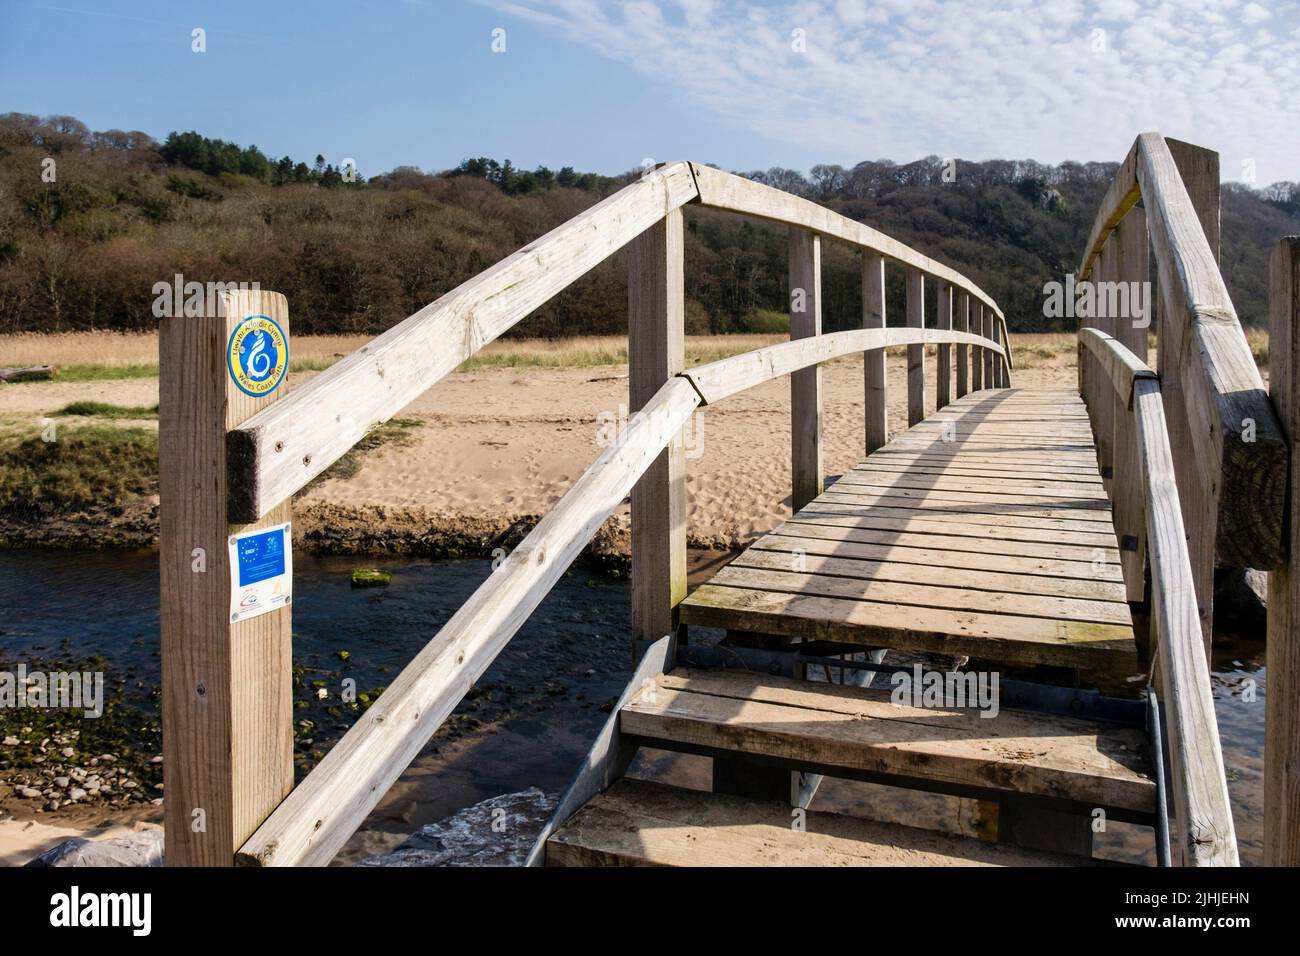 La ruta de la costa de Gales indica la ruta en la pasarela sobre el arroyo Nicholaston Pill en la reserva natural nacional de Oxwich en la península de Gower, West Glamorgan, Gales del Sur, Reino Unido Foto de stock